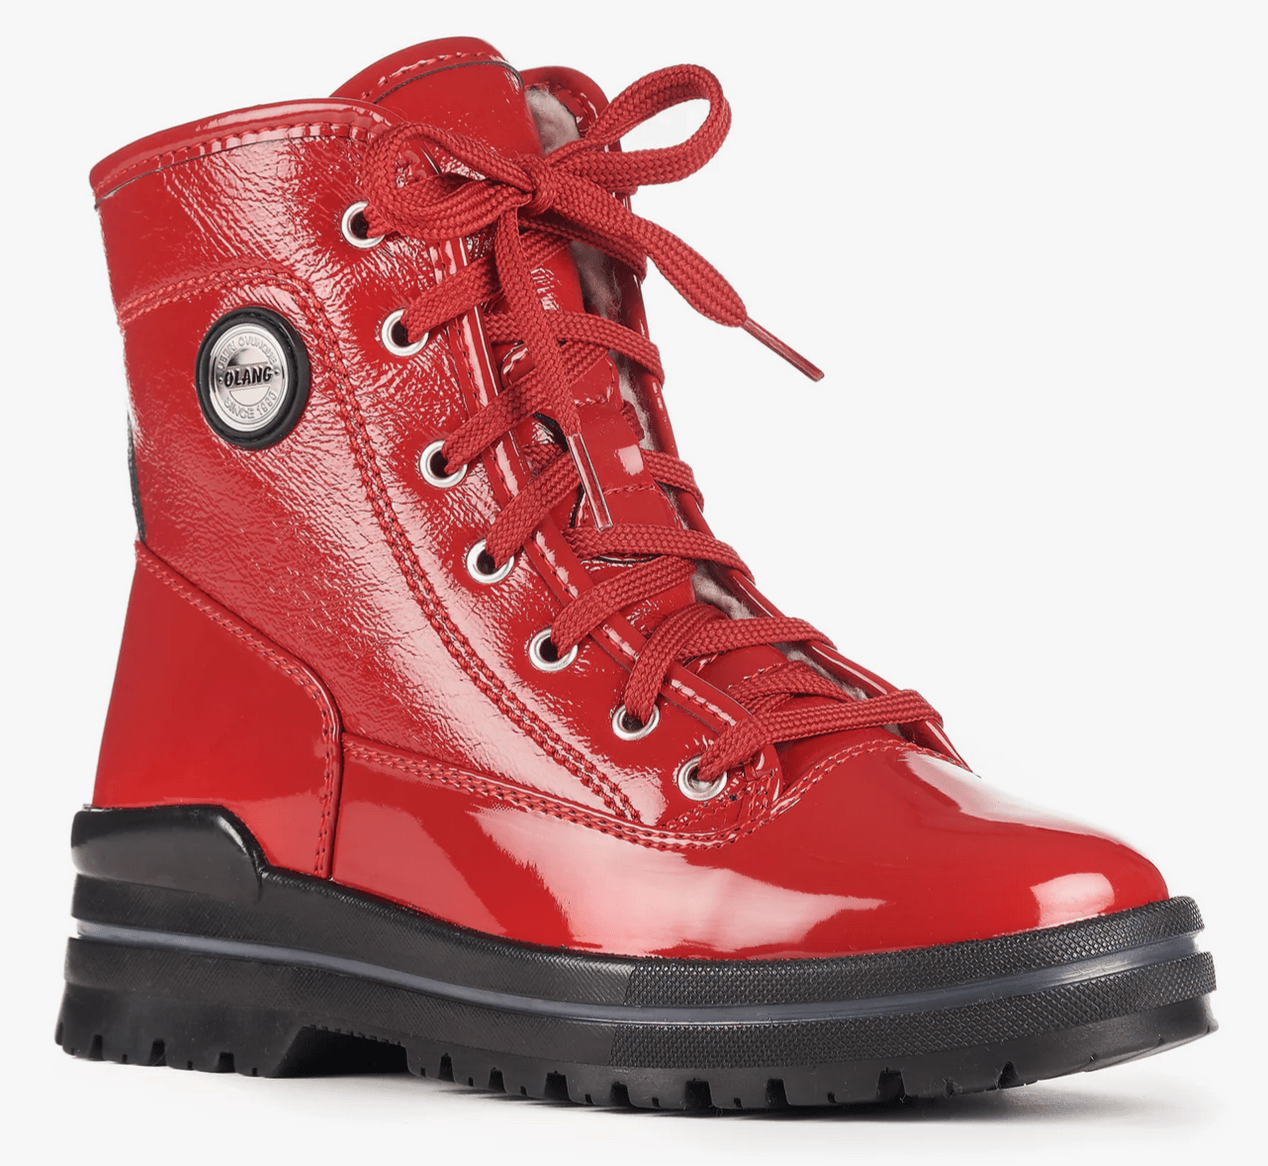 OLANG SPOKE - Women's winter boots - FINAL SALE - Boutique Bubbles